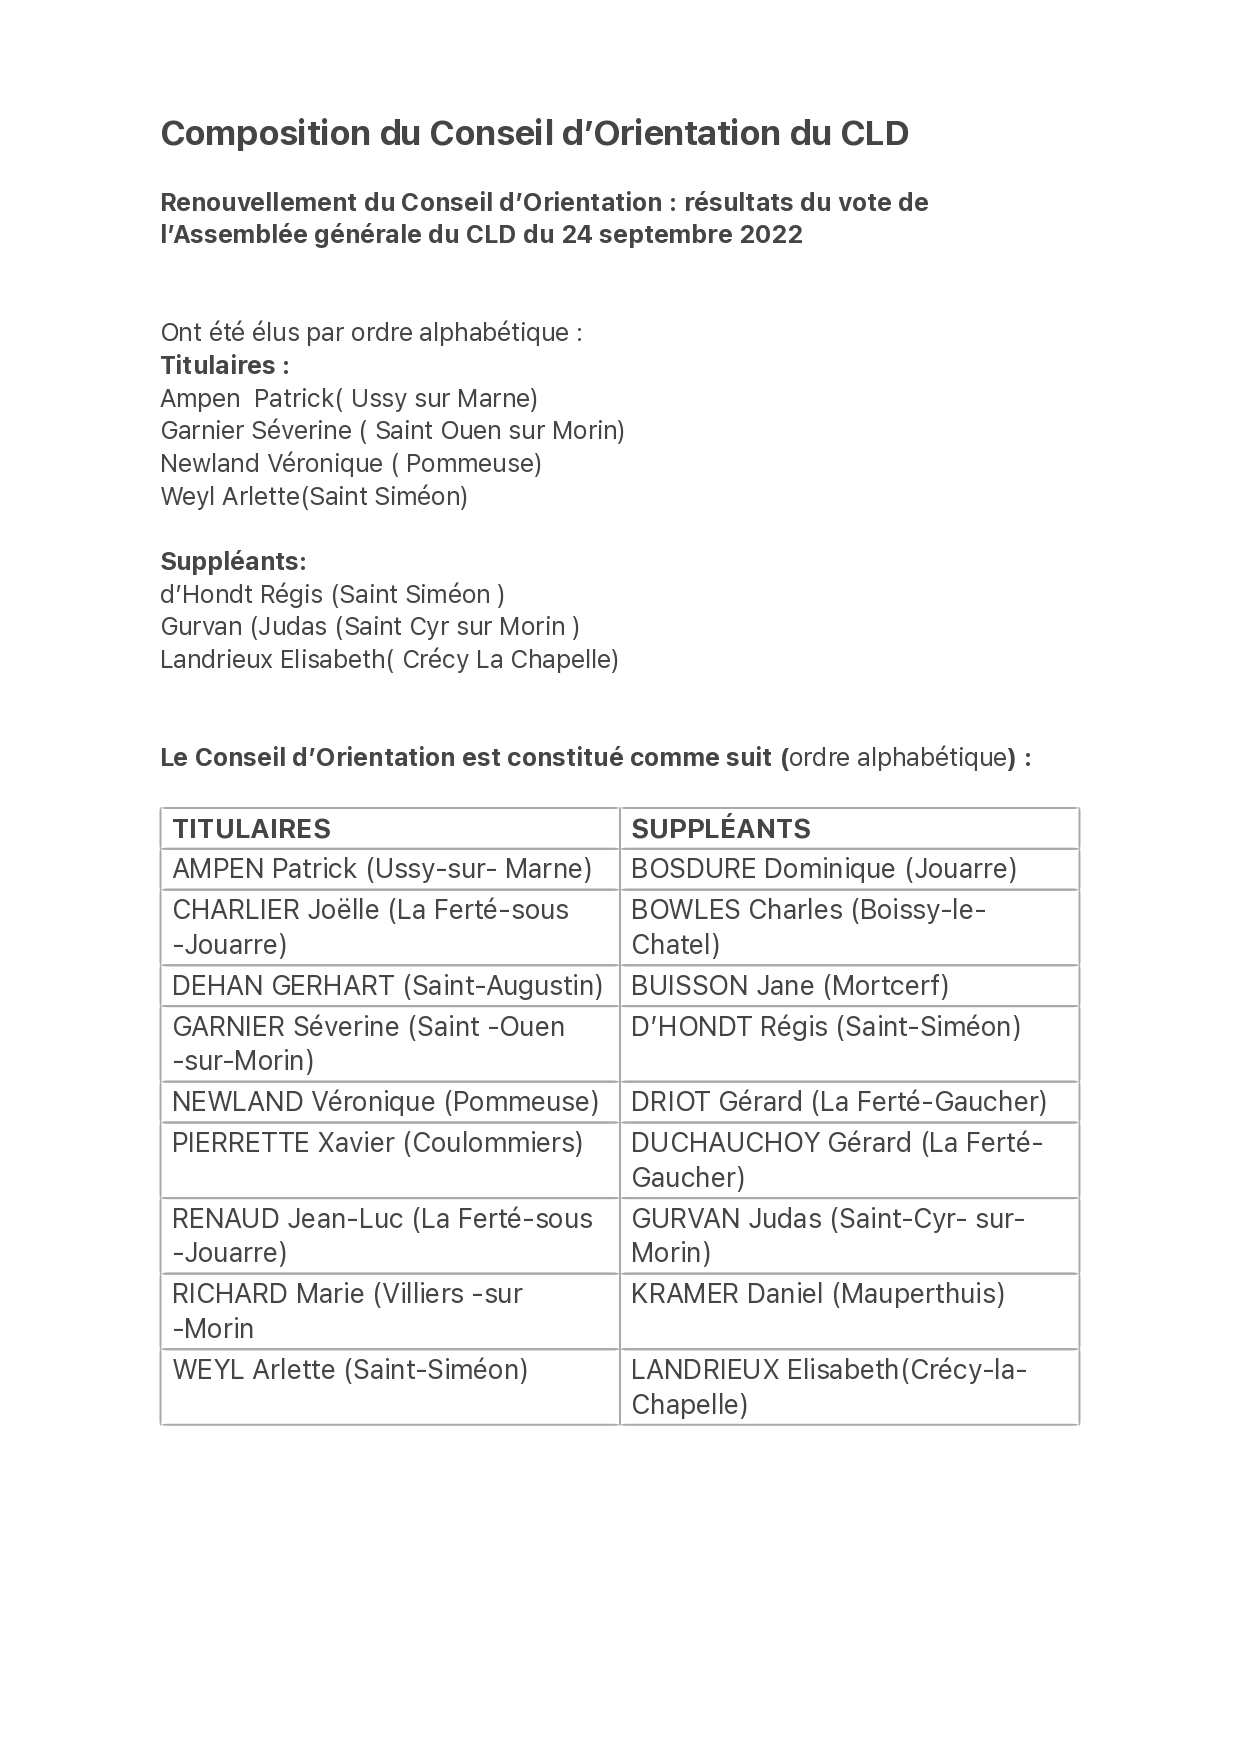 Composition du Conseil orientation au 24 septembre 2022_page-0001